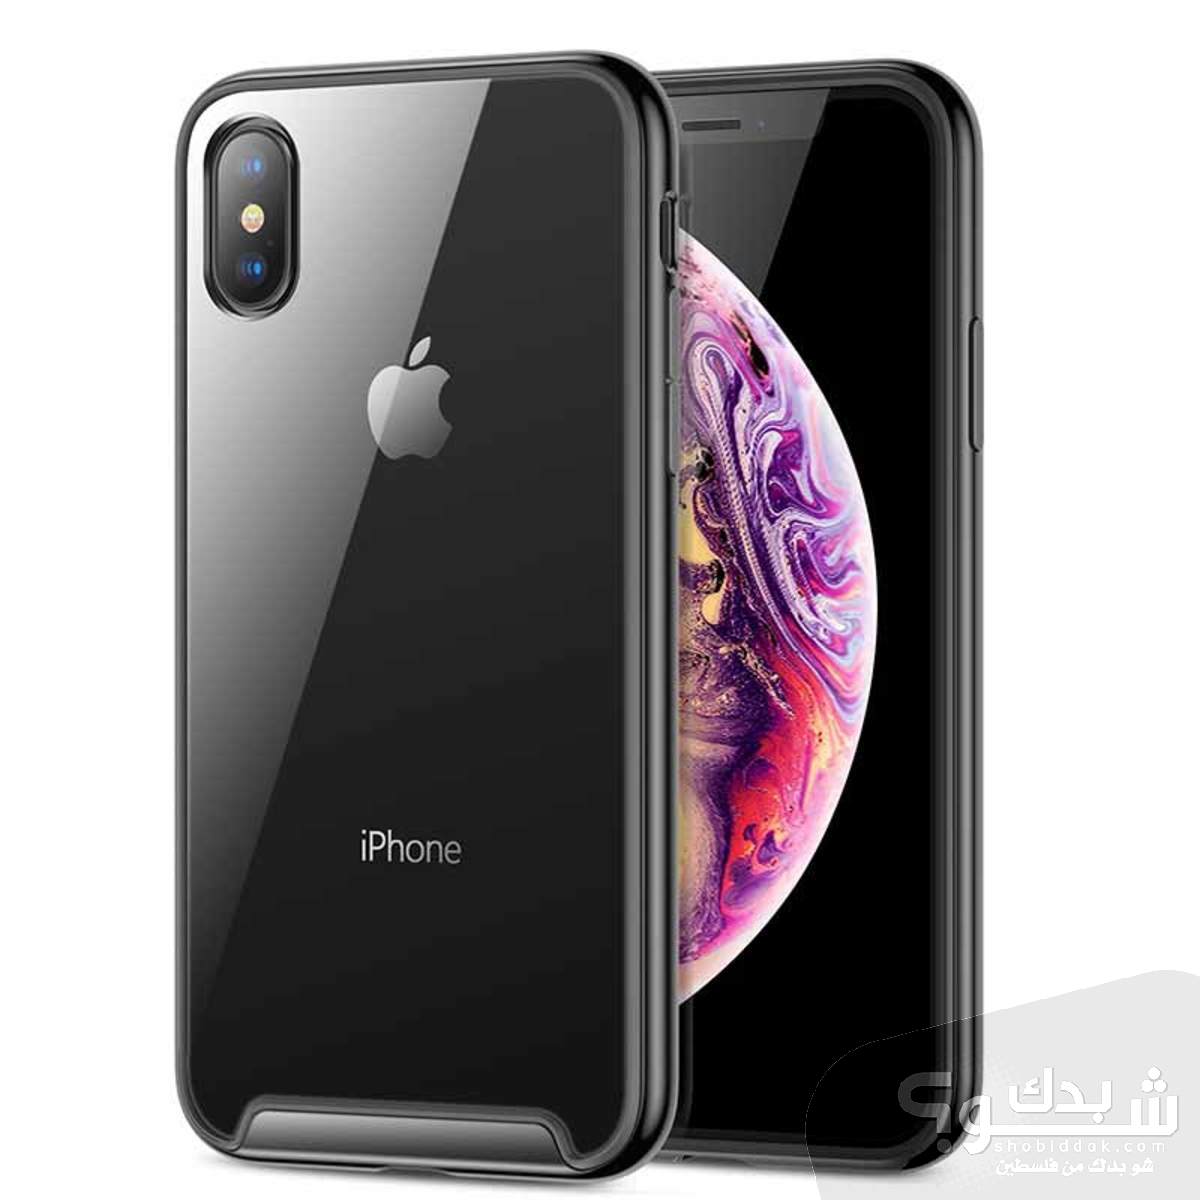 Apple ايفون XS - مستعمل | شو بدك من فلسطين؟